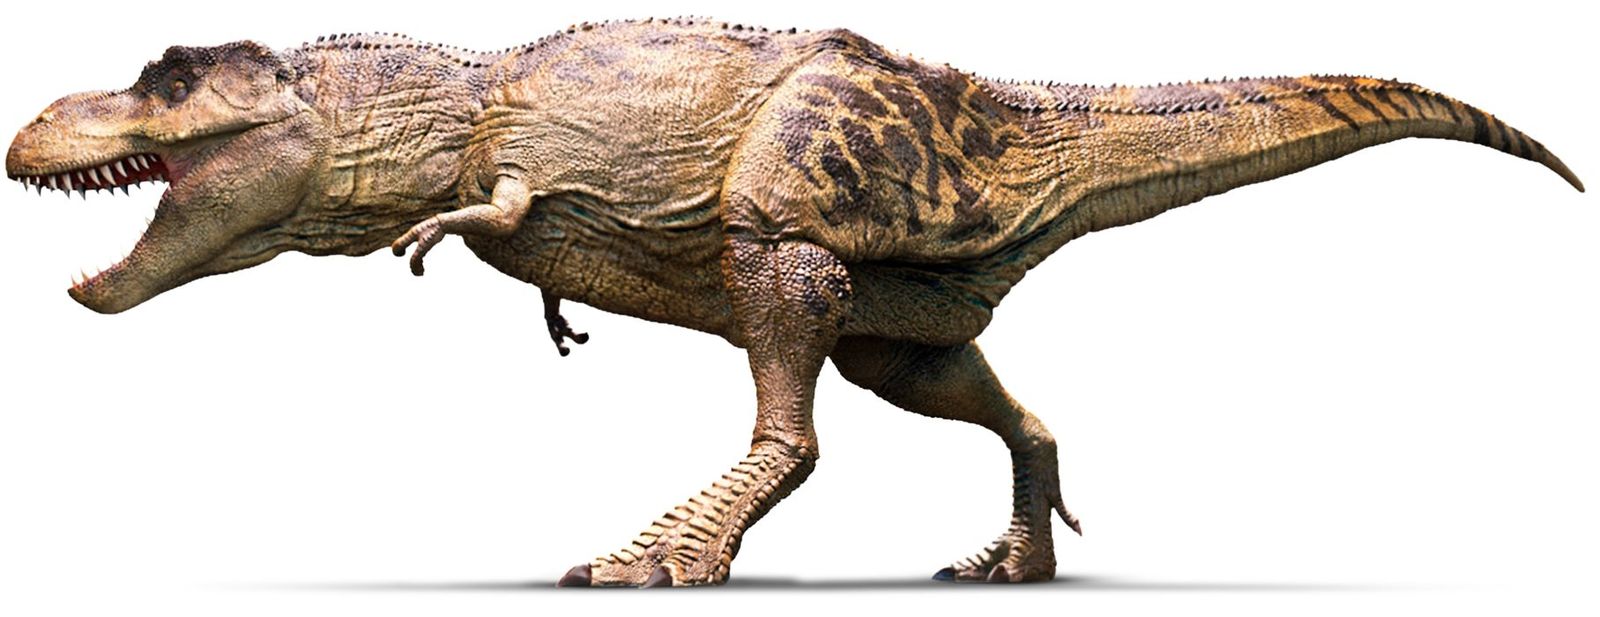 Тираннозавр или тиранозавр, как правильно пишется тираннозавр